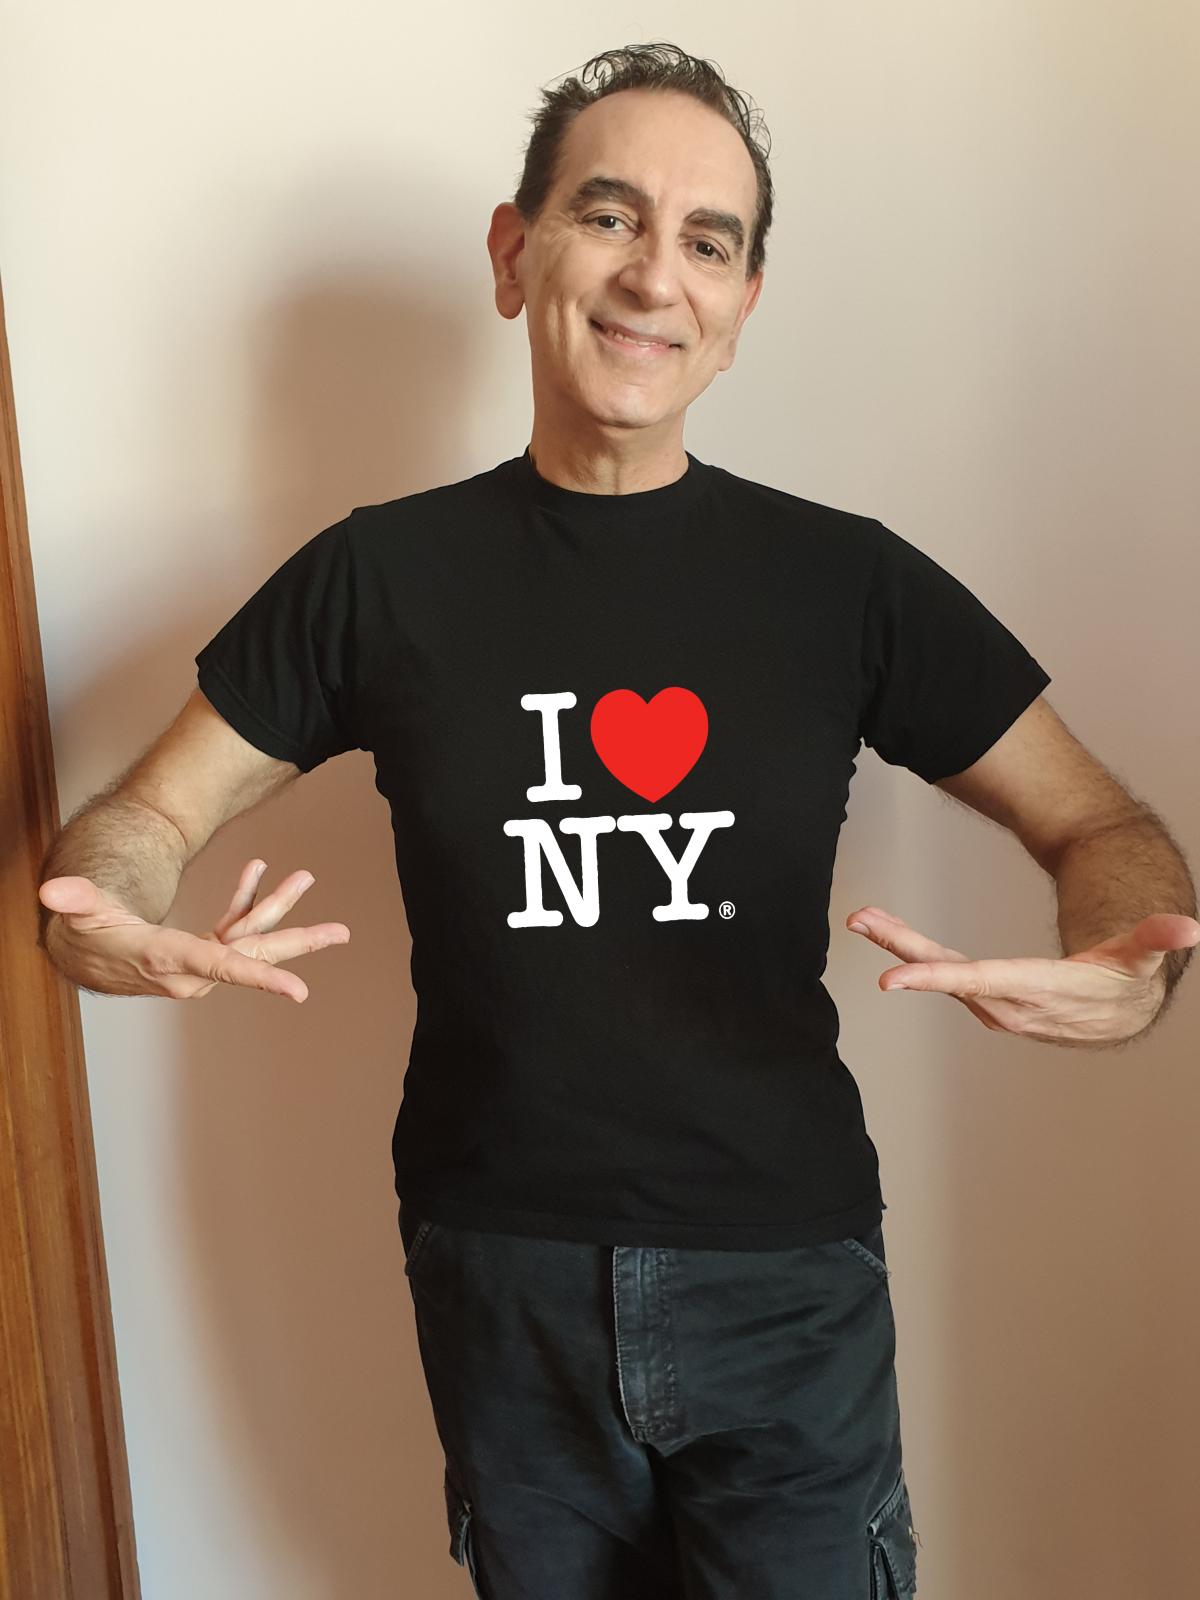 Perché “I love New York”